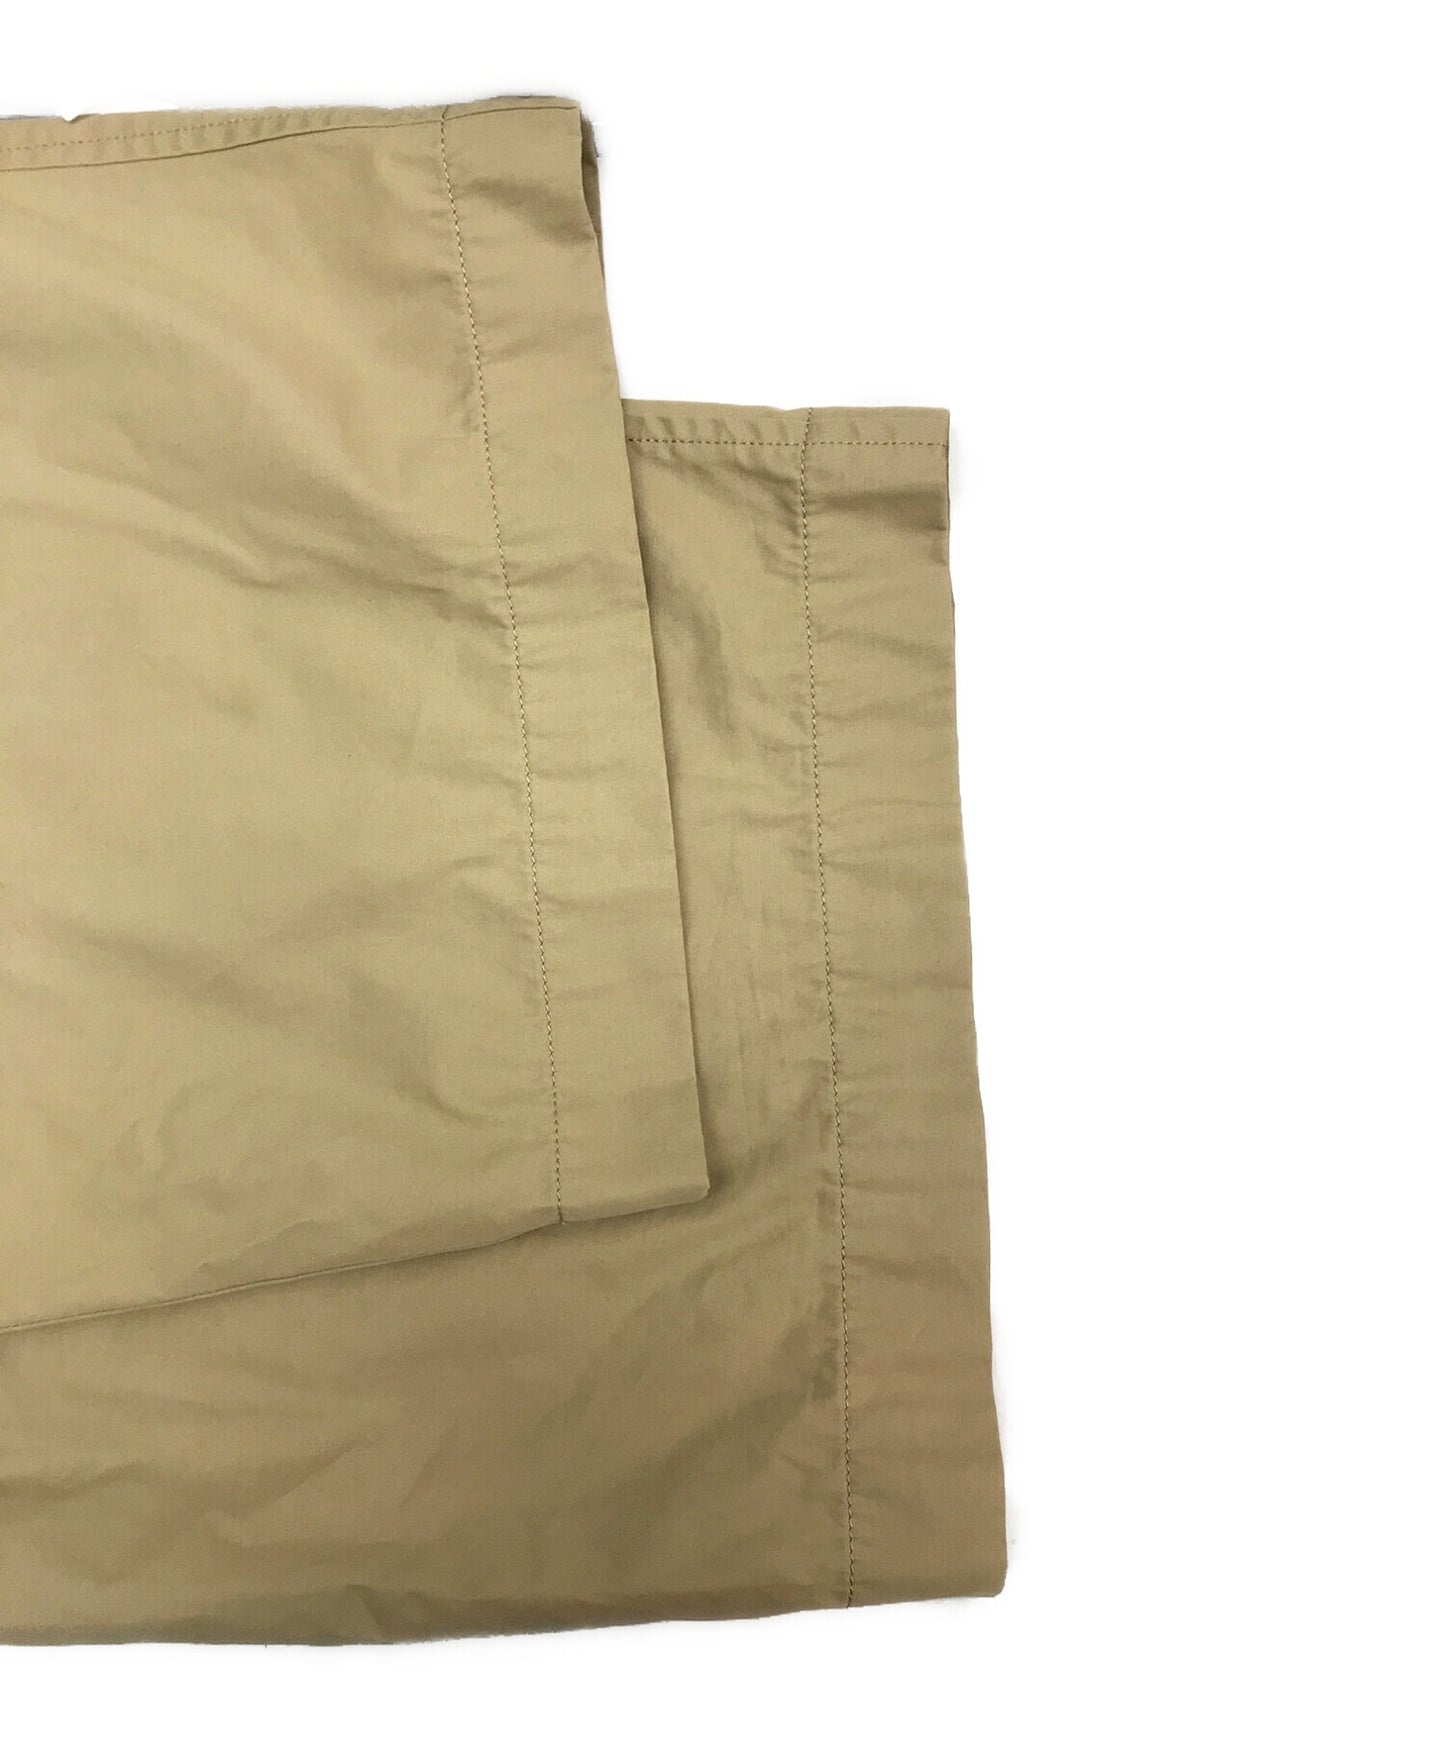 กางเกง Hakama Chino ของ Y/กางเกงกว้าง/กางเกงเหน็บ yo-p05-013